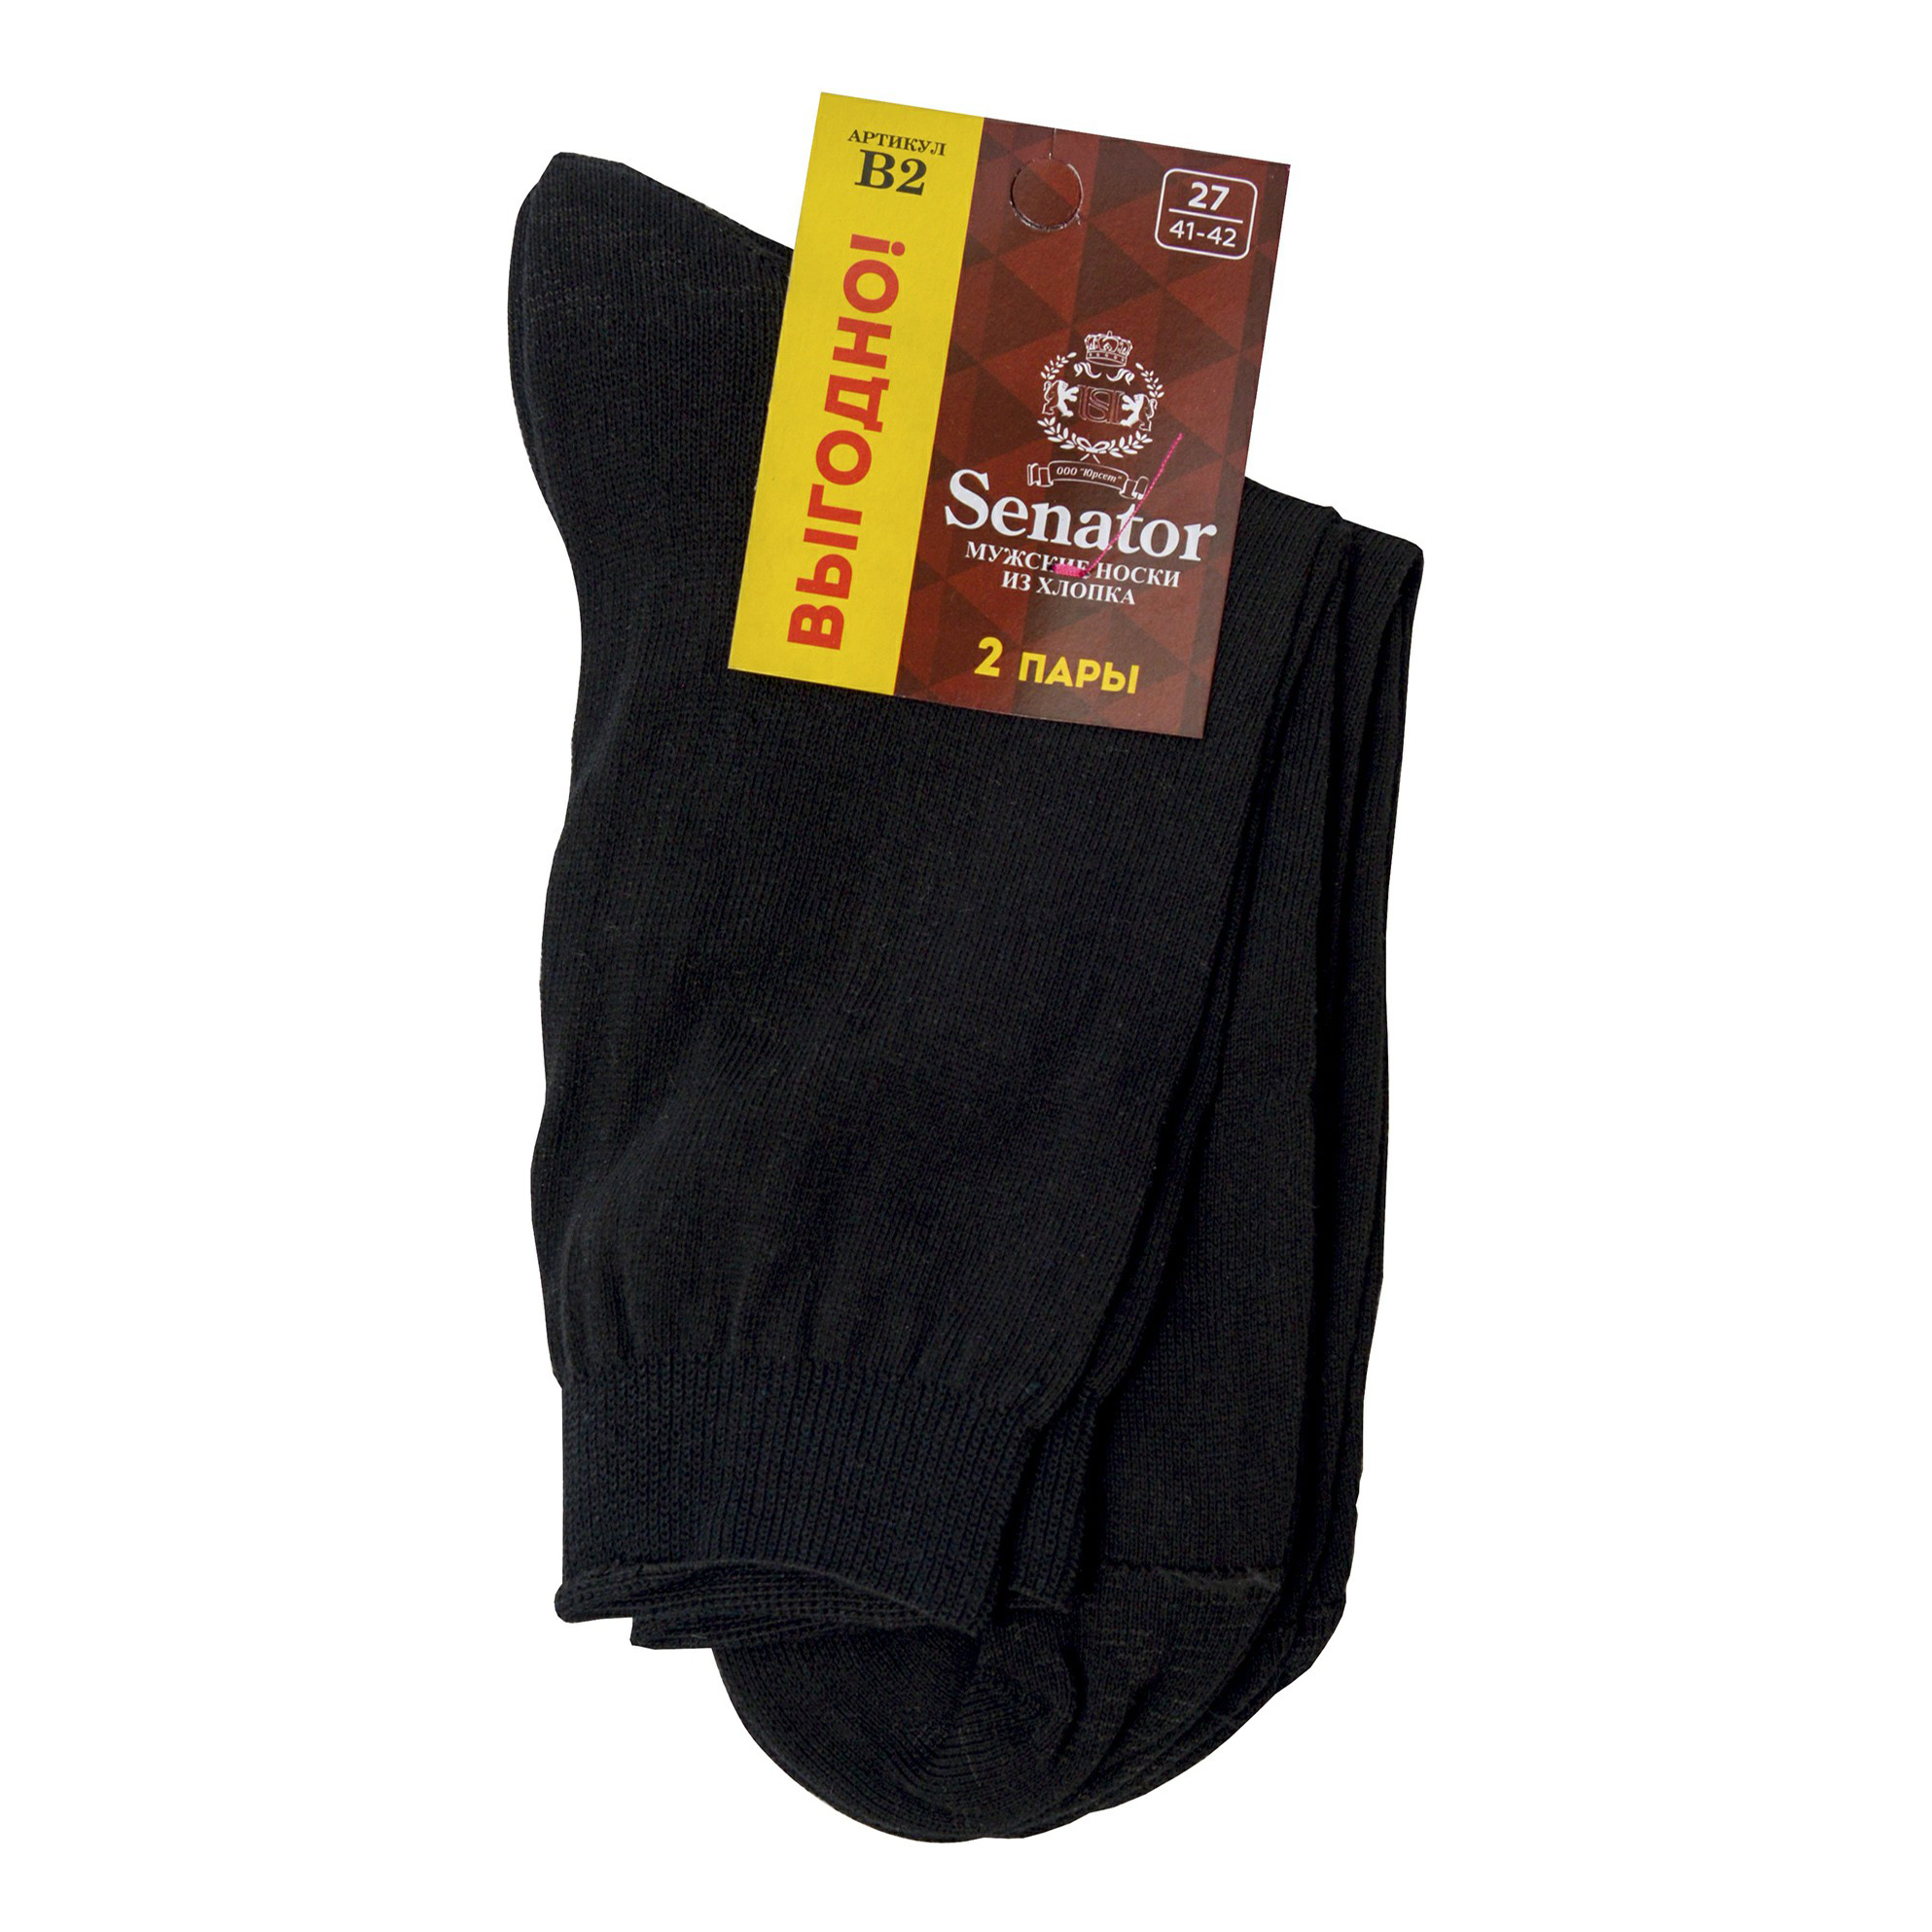 Комплект носков мужских черных 27 Senator. Цвет: черный